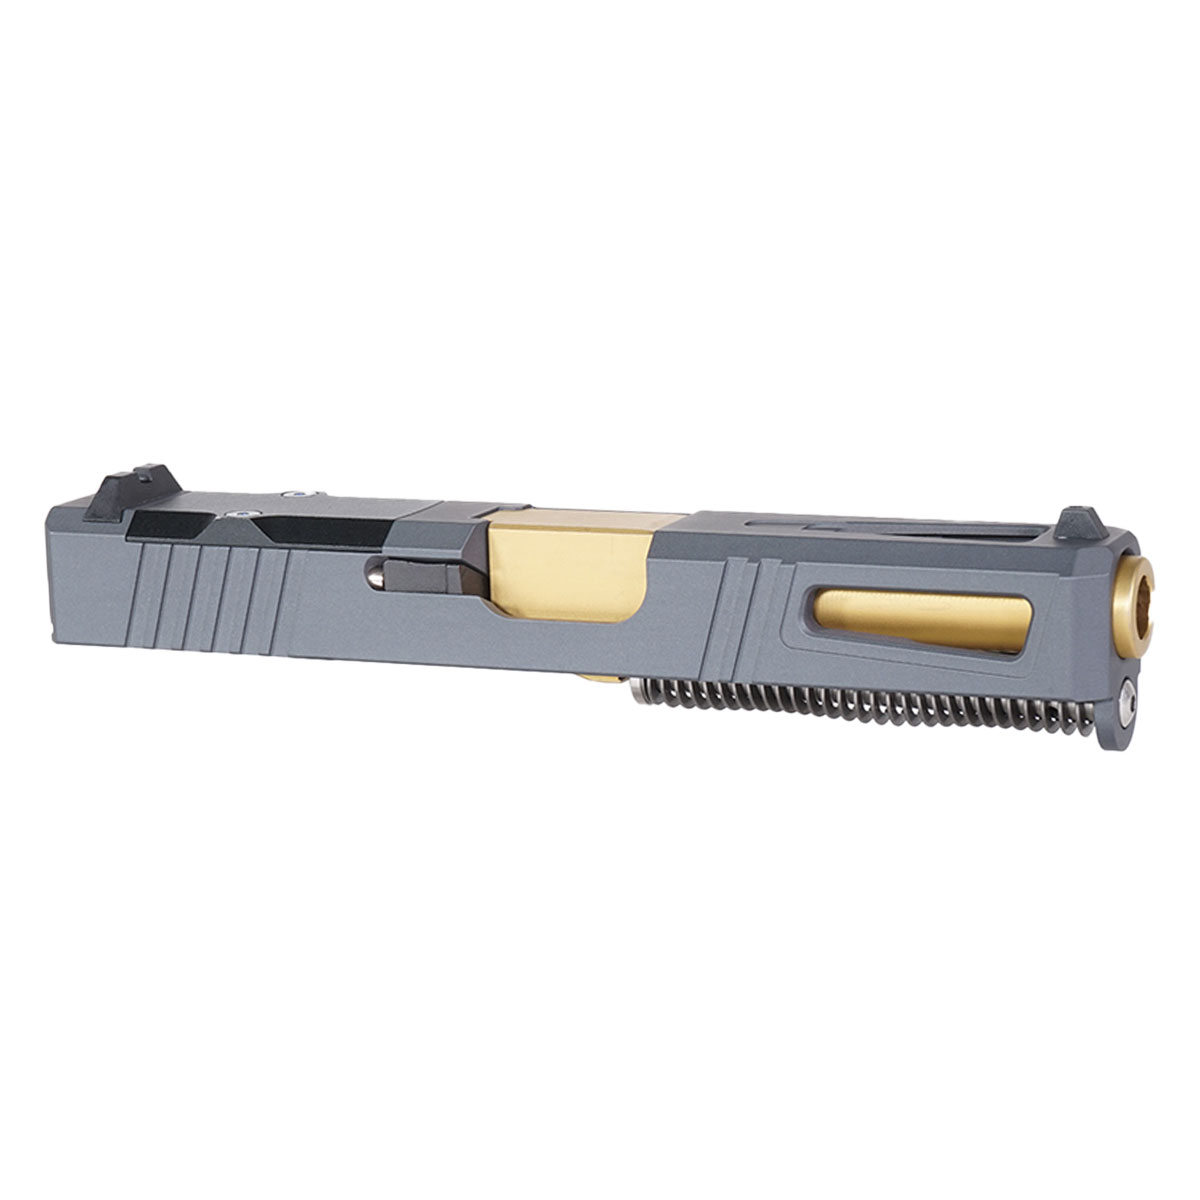 MMC 'Gold Strike' 9mm Complete Slide Kit - Glock 19 Gen 1-3 Compatible